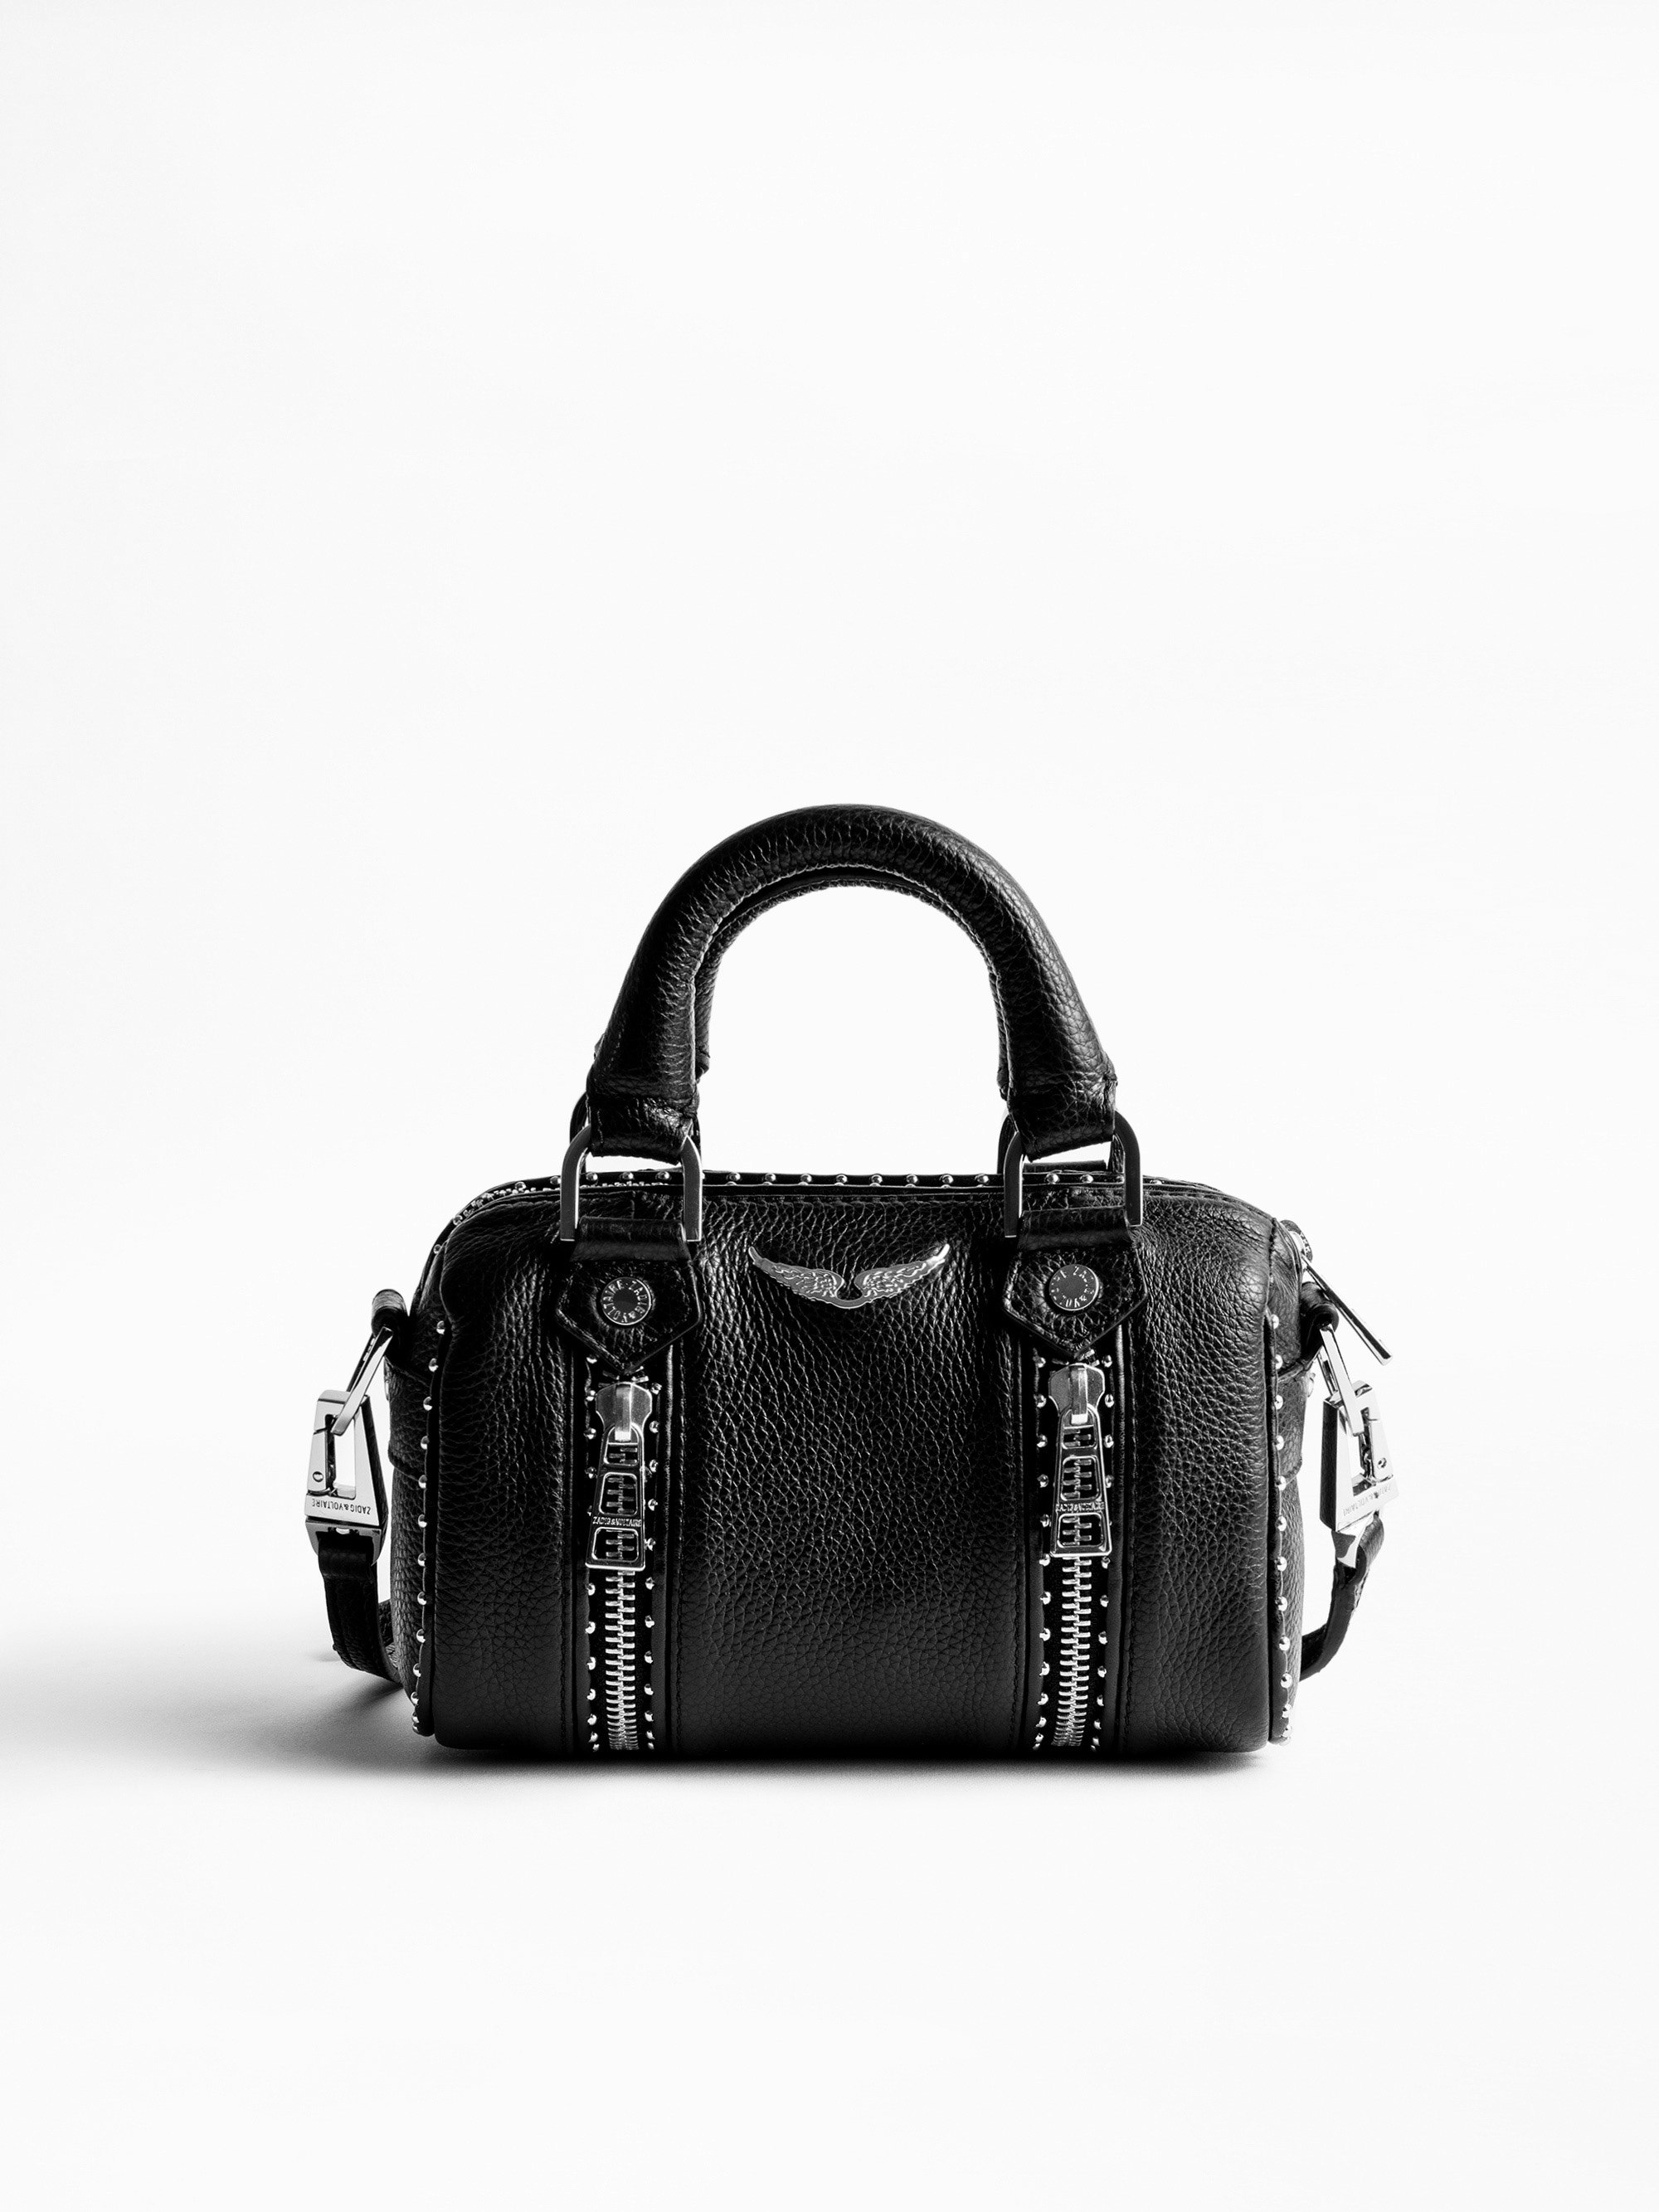 Tasche Sunny Nano Studs - Ikonische Damen-Handtasche Sunny Nano aus schwarzem, genarbtem Leder mit silberfarbenen Nieten.